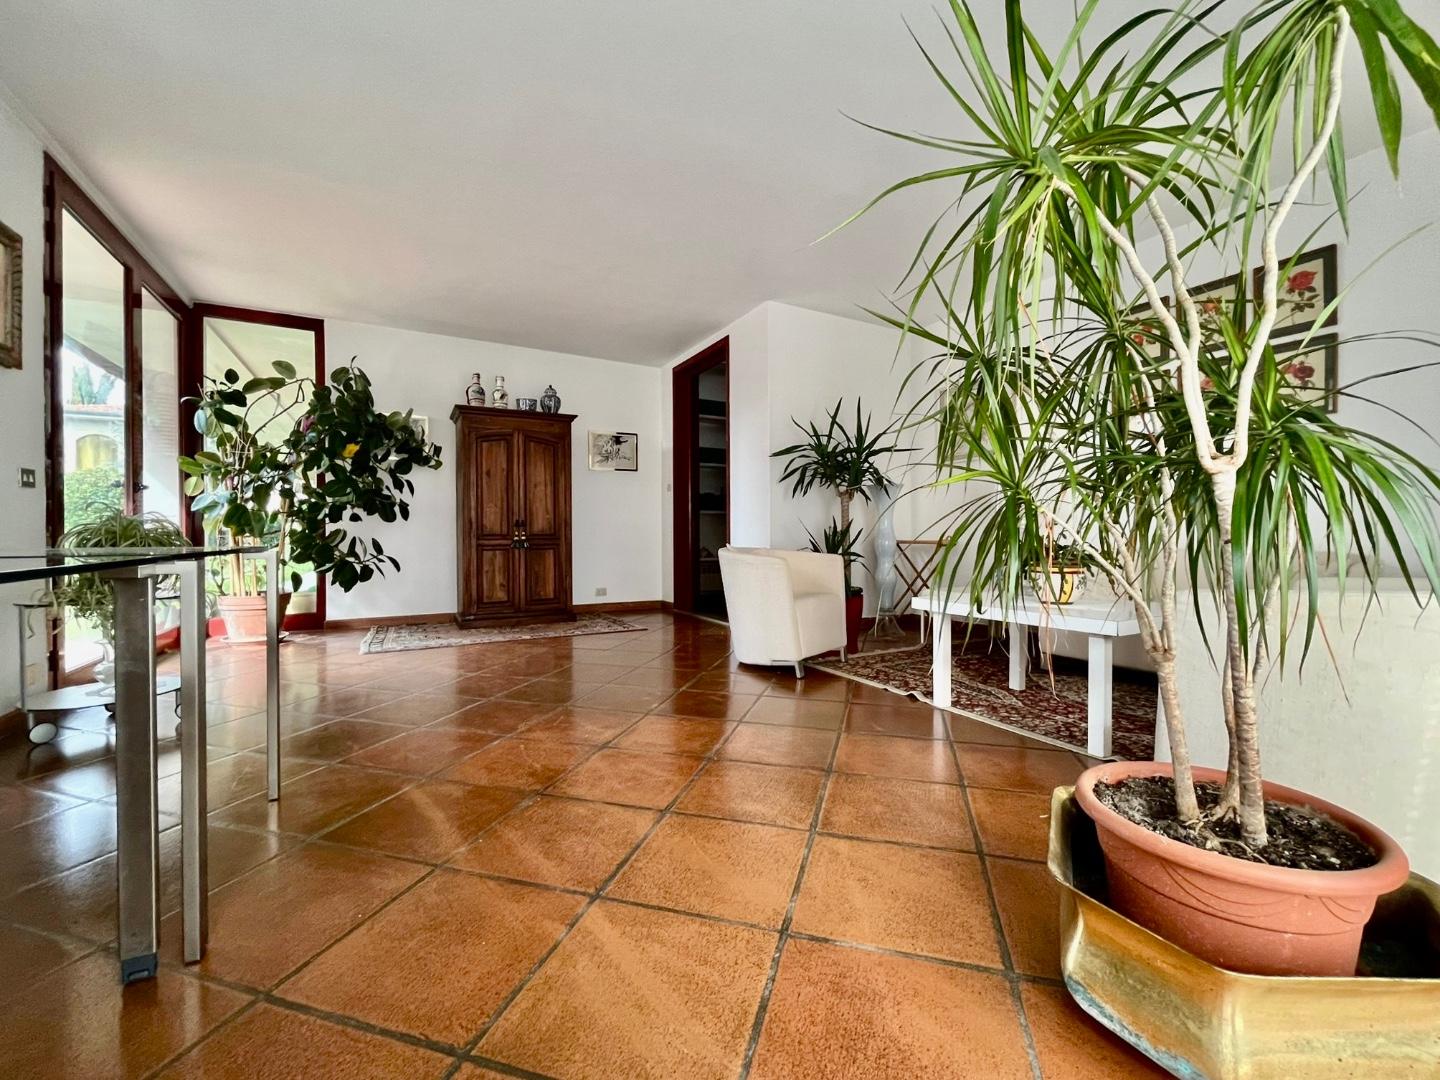 Villa Bifamiliare in vendita a Pontedera, 6 locali, prezzo € 290.000 | PortaleAgenzieImmobiliari.it